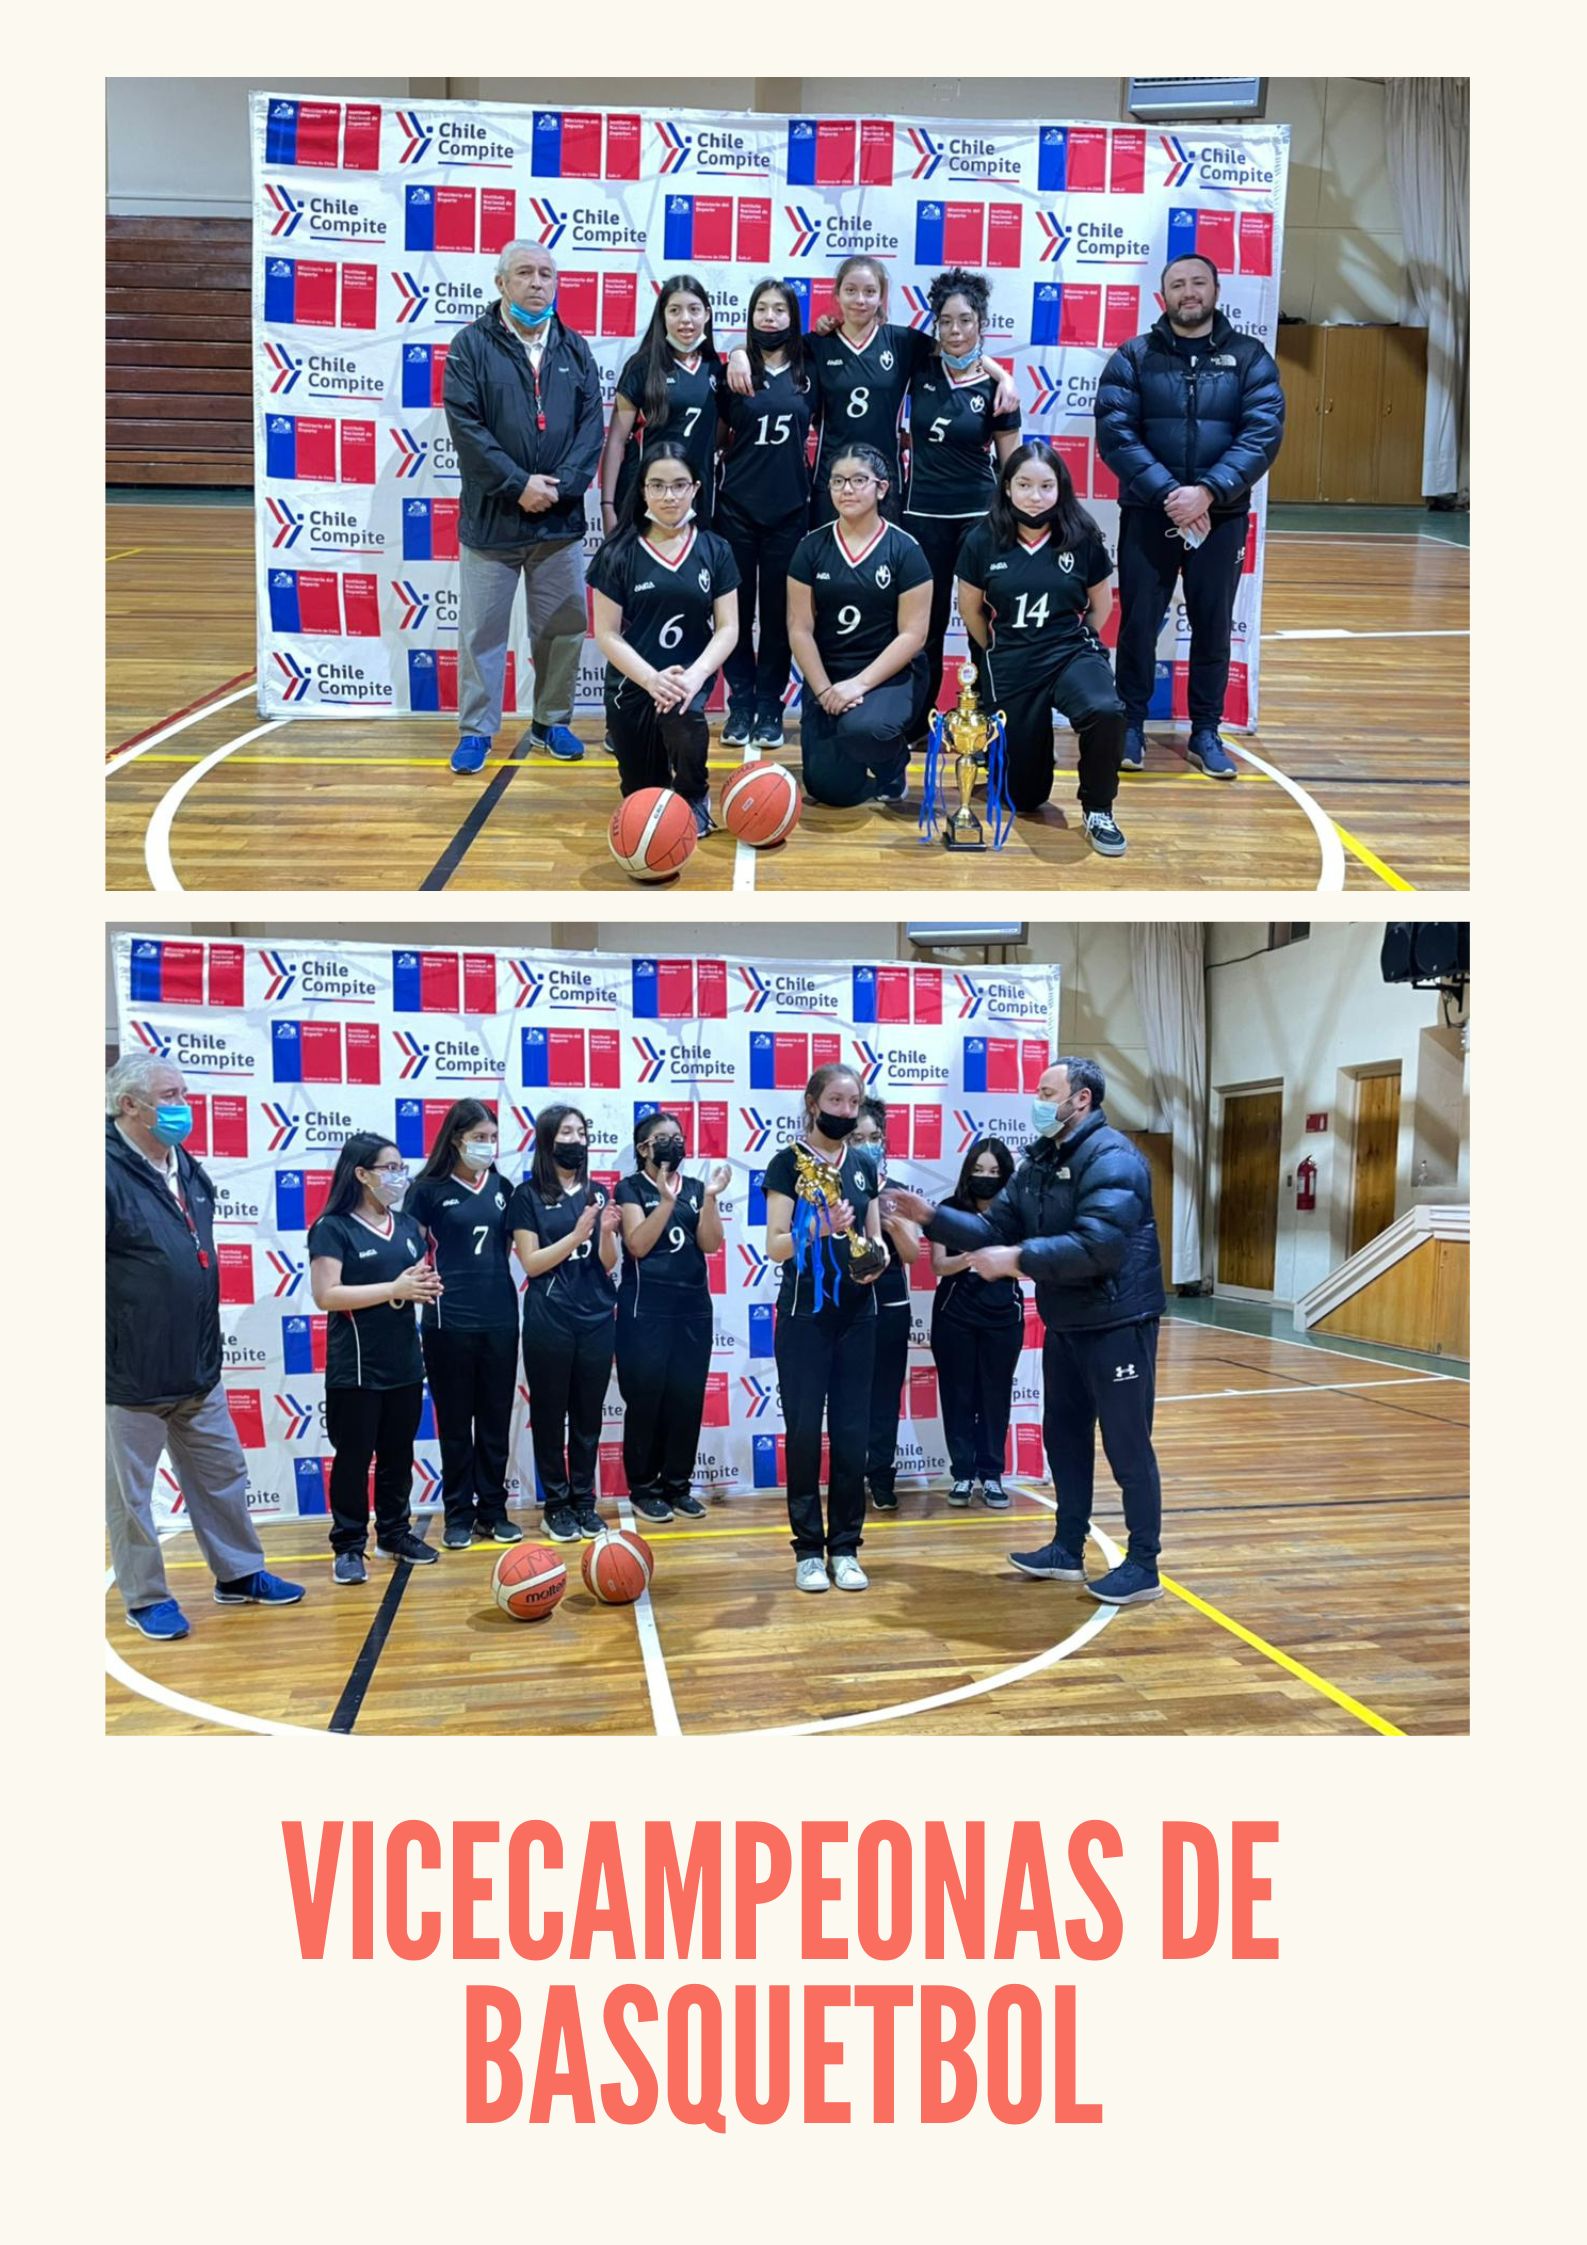 Vicecampeonas_de_basquetbol.jpg